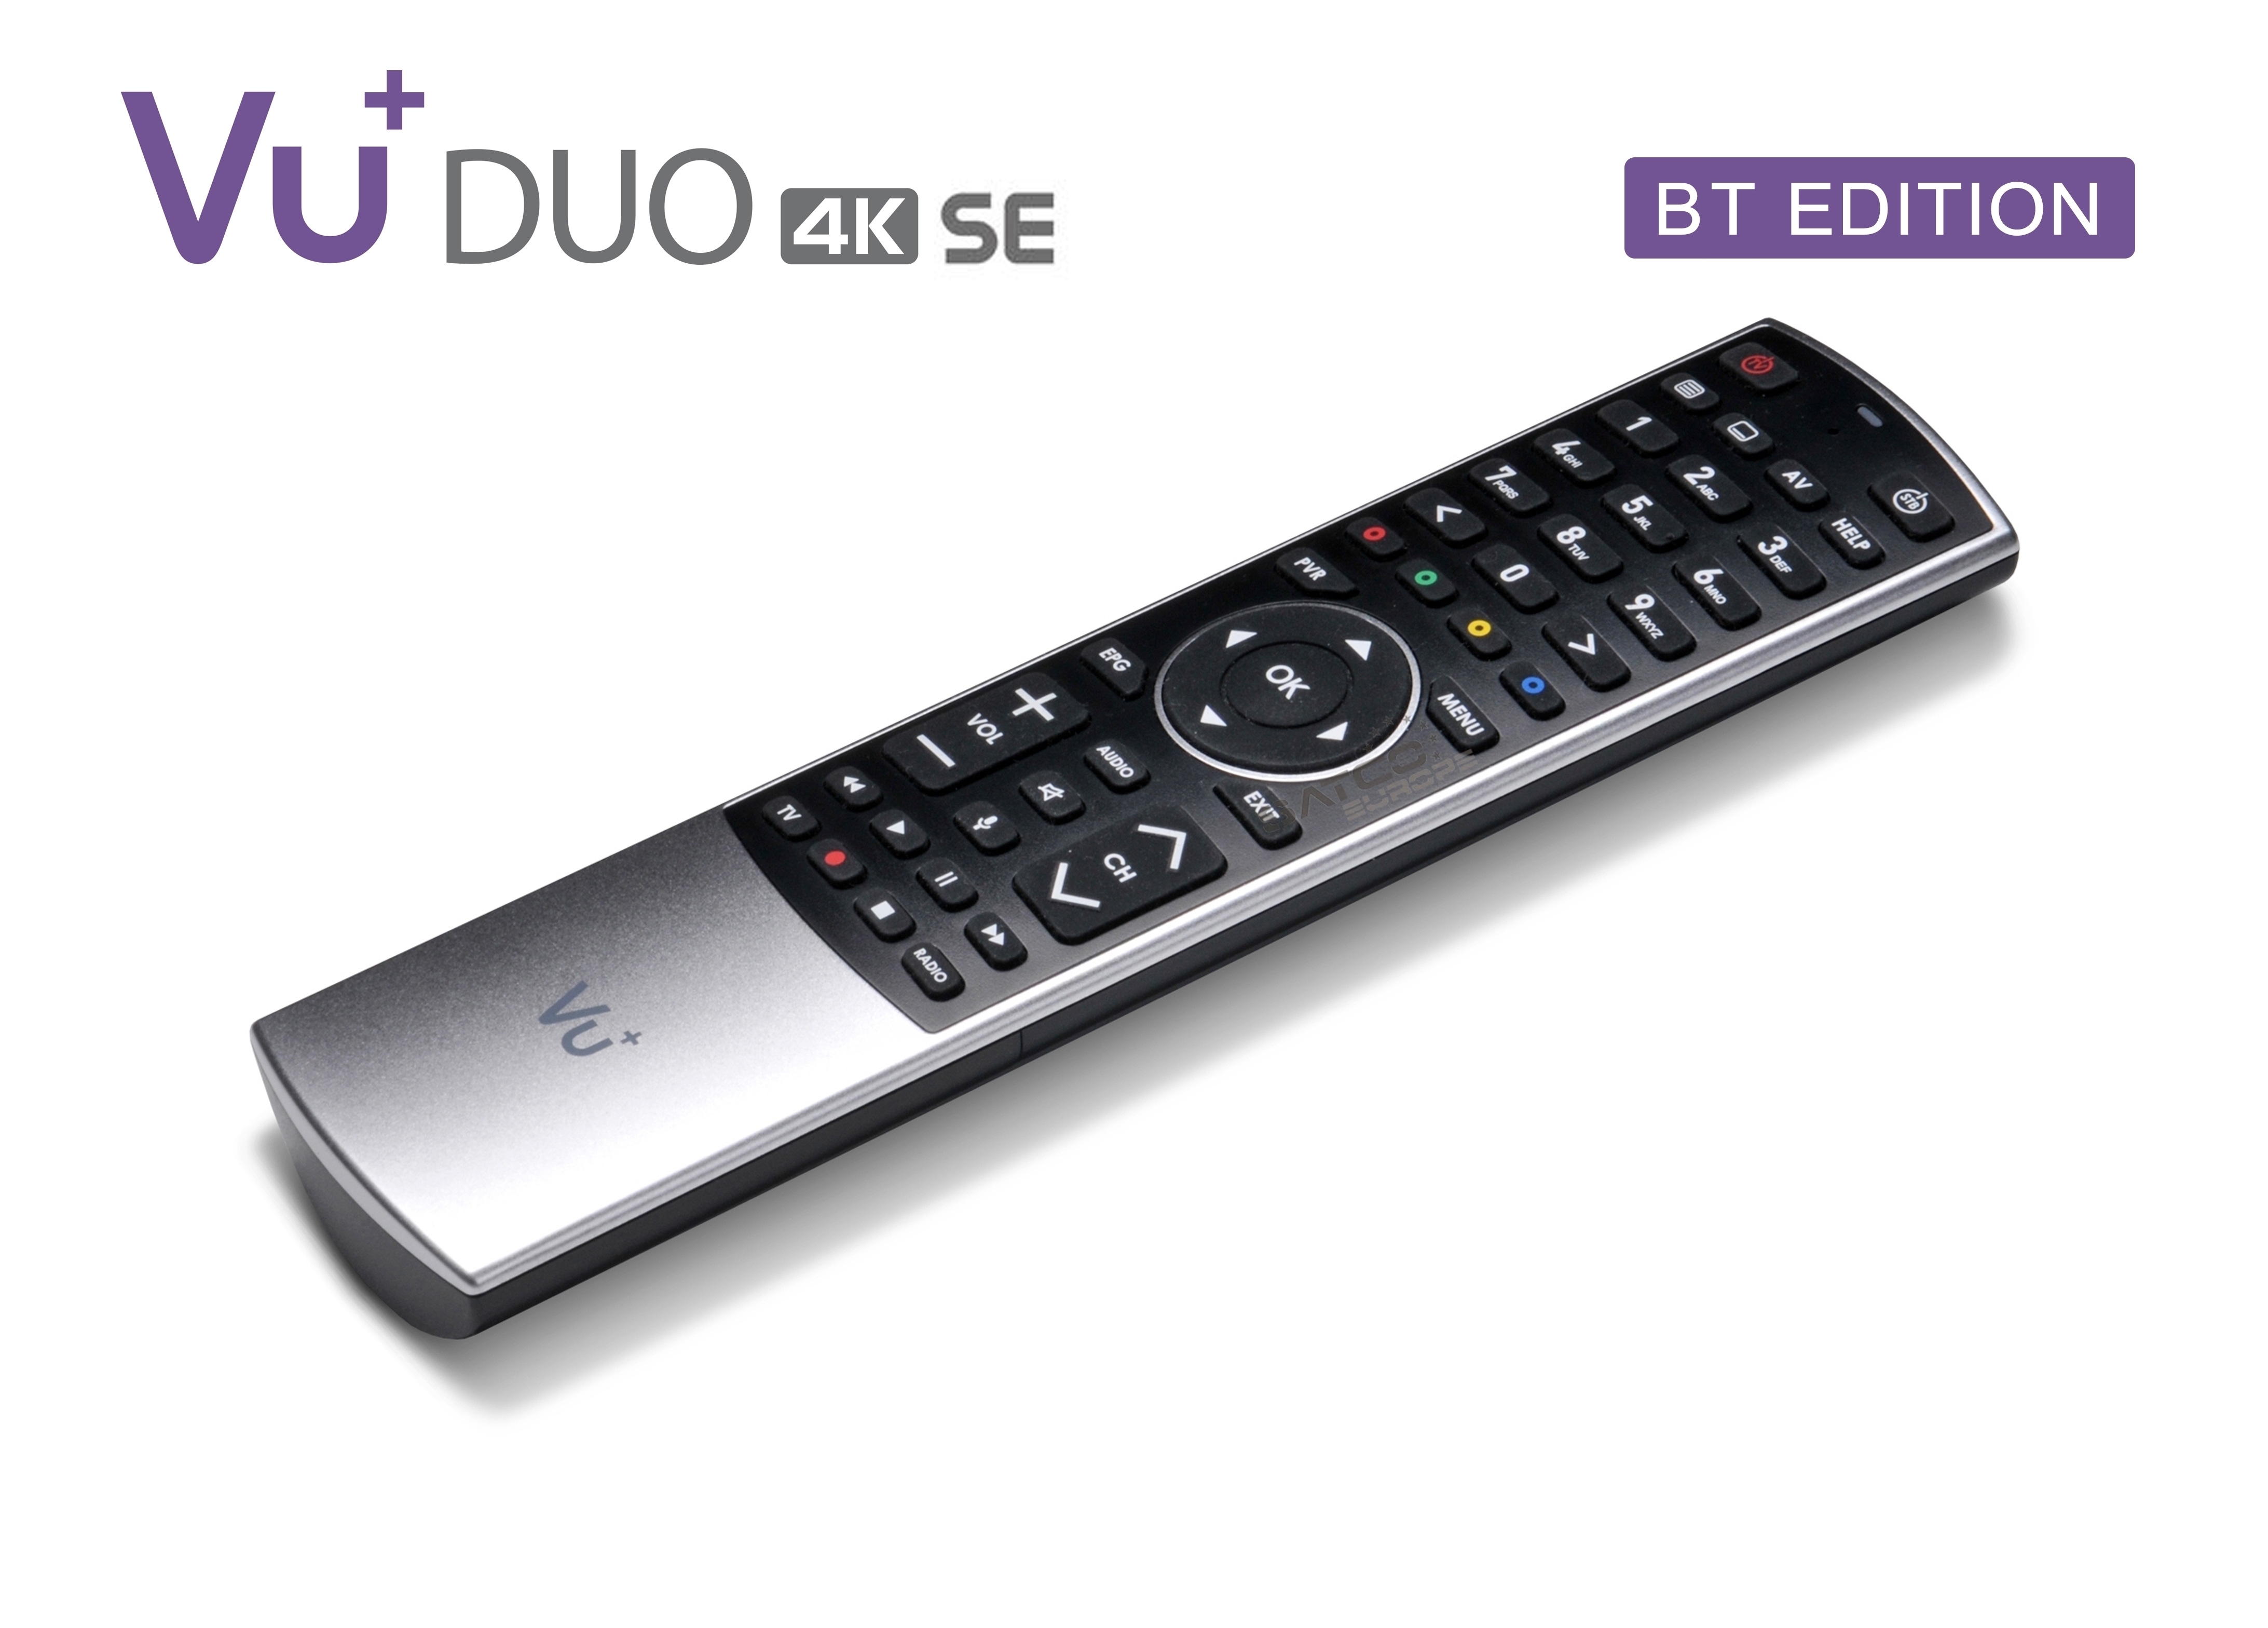 VU+ Duo 4K SE BT 1x DVB-C FBC Tuner 2 TB HDD Linux Receiver UHD 2160p